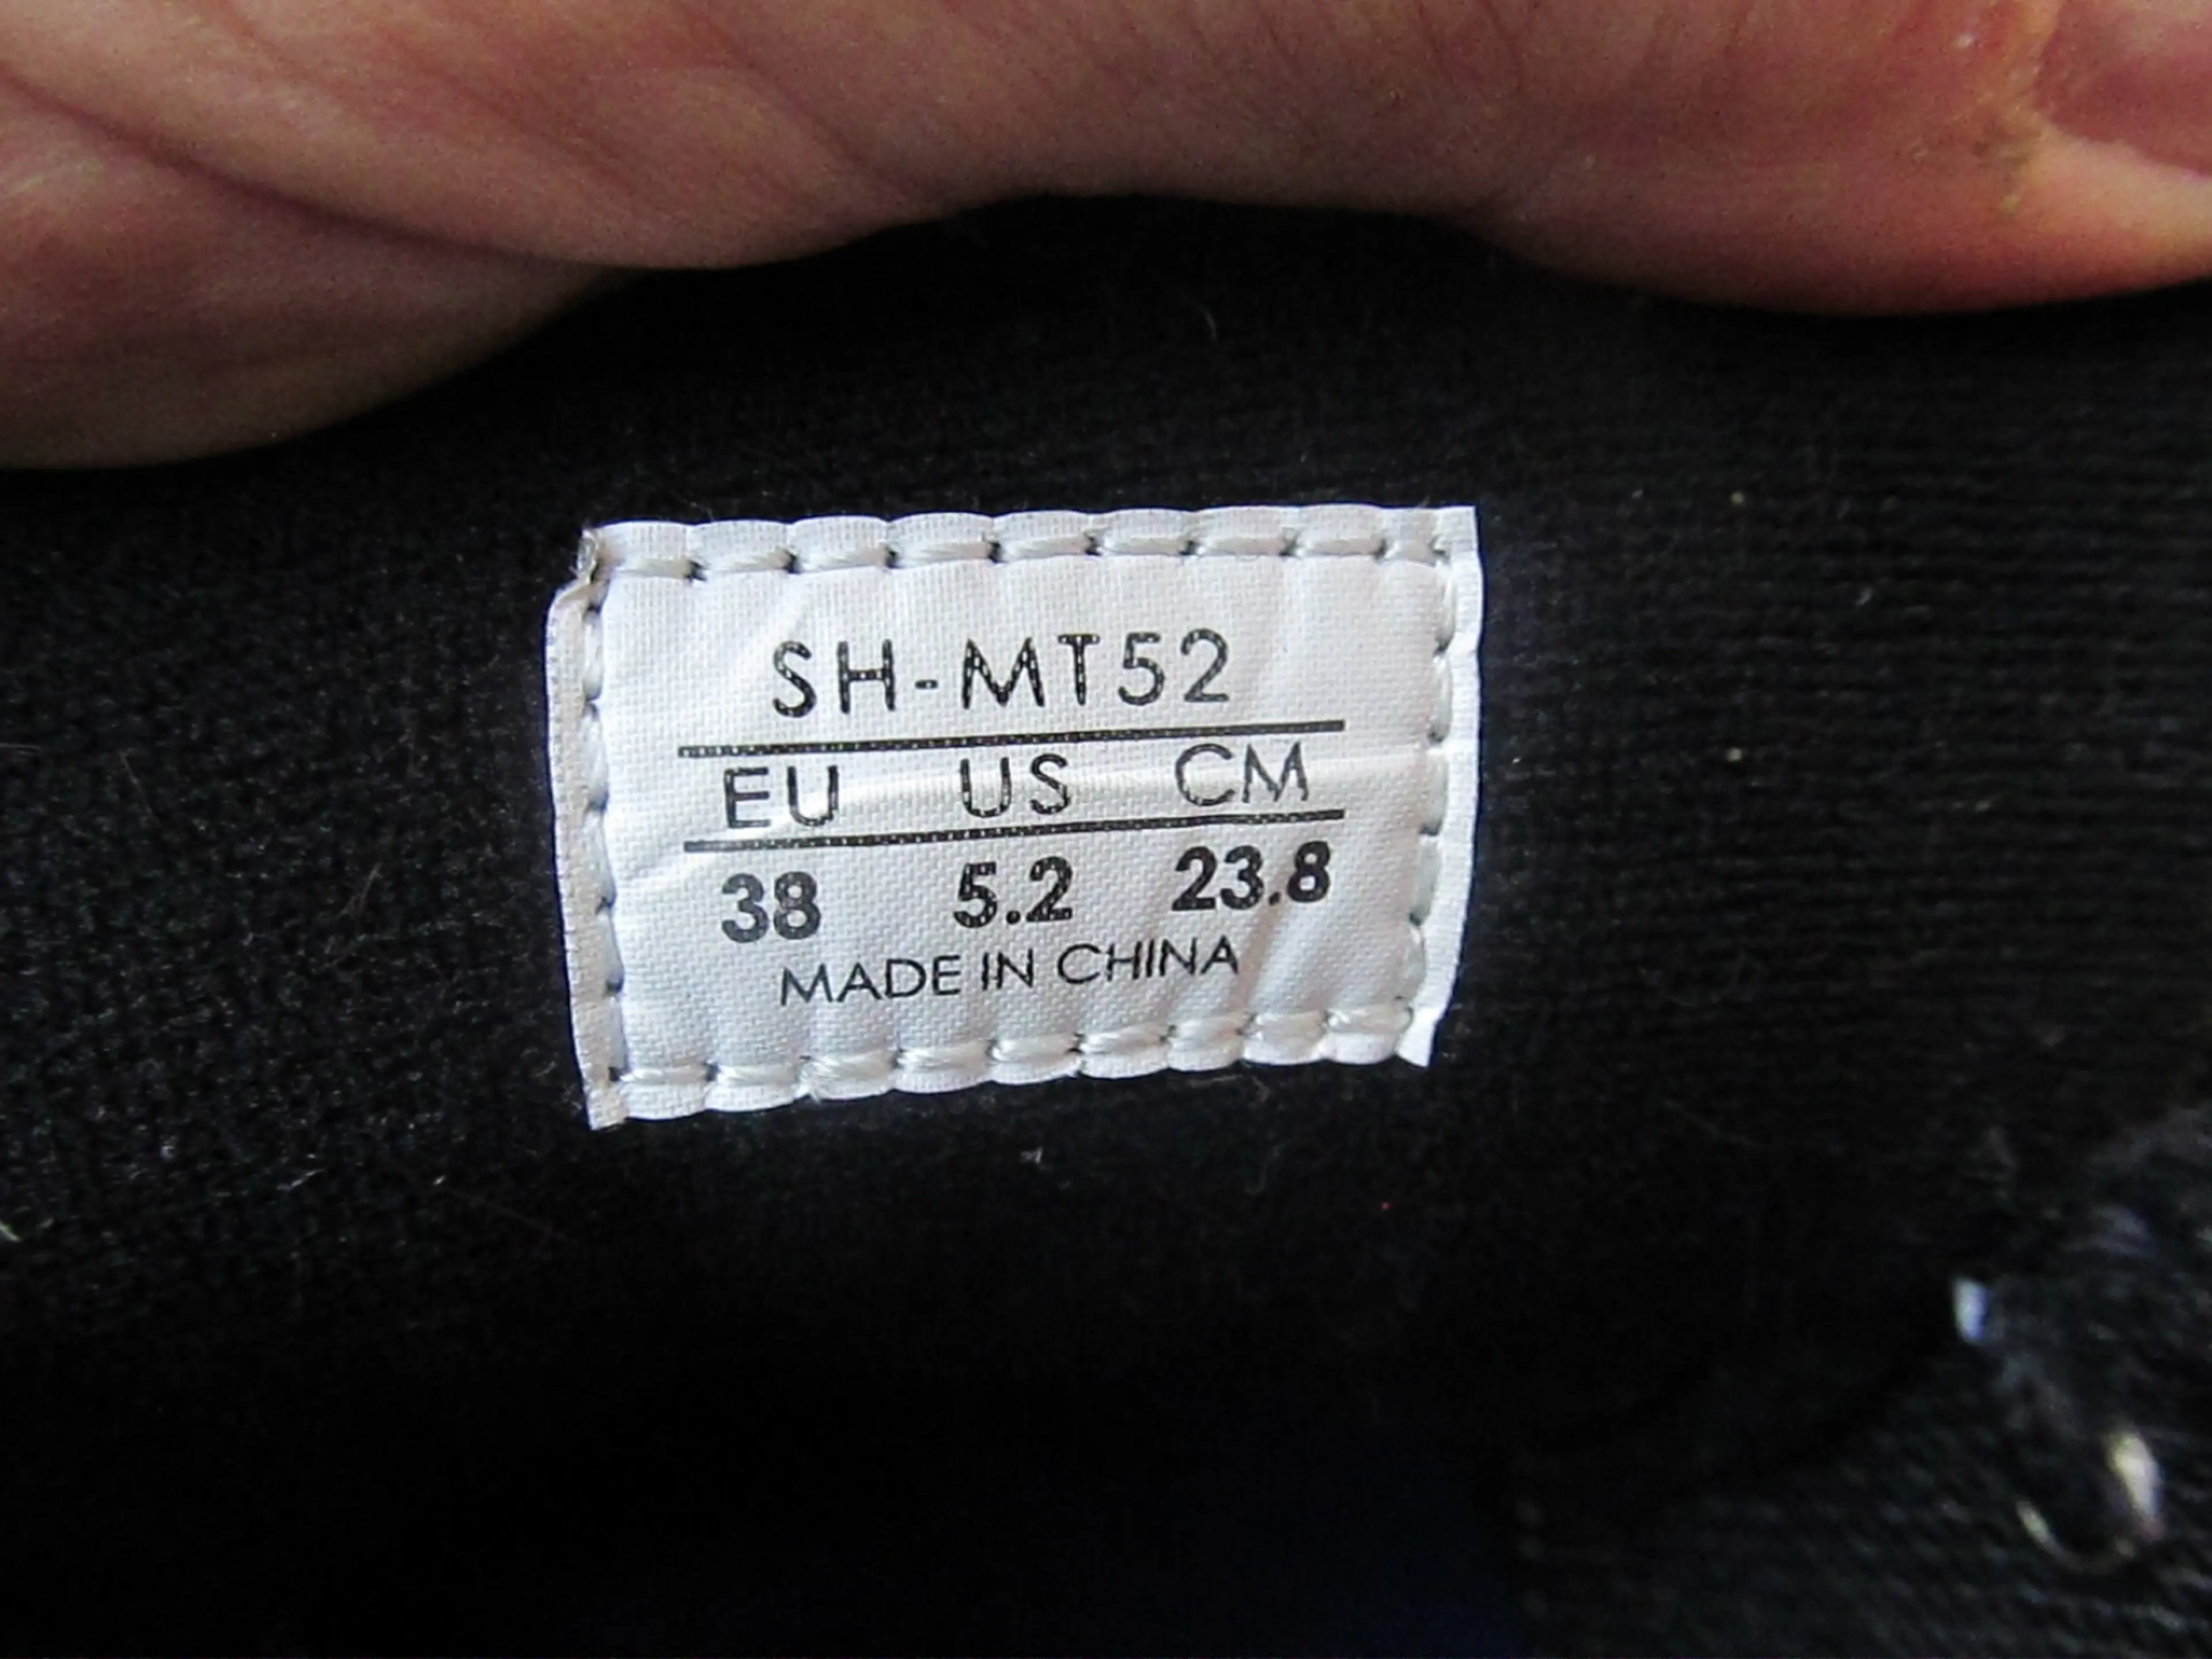 Image Pantofi Shimano SH-MT52, nr 38, 23.8cm